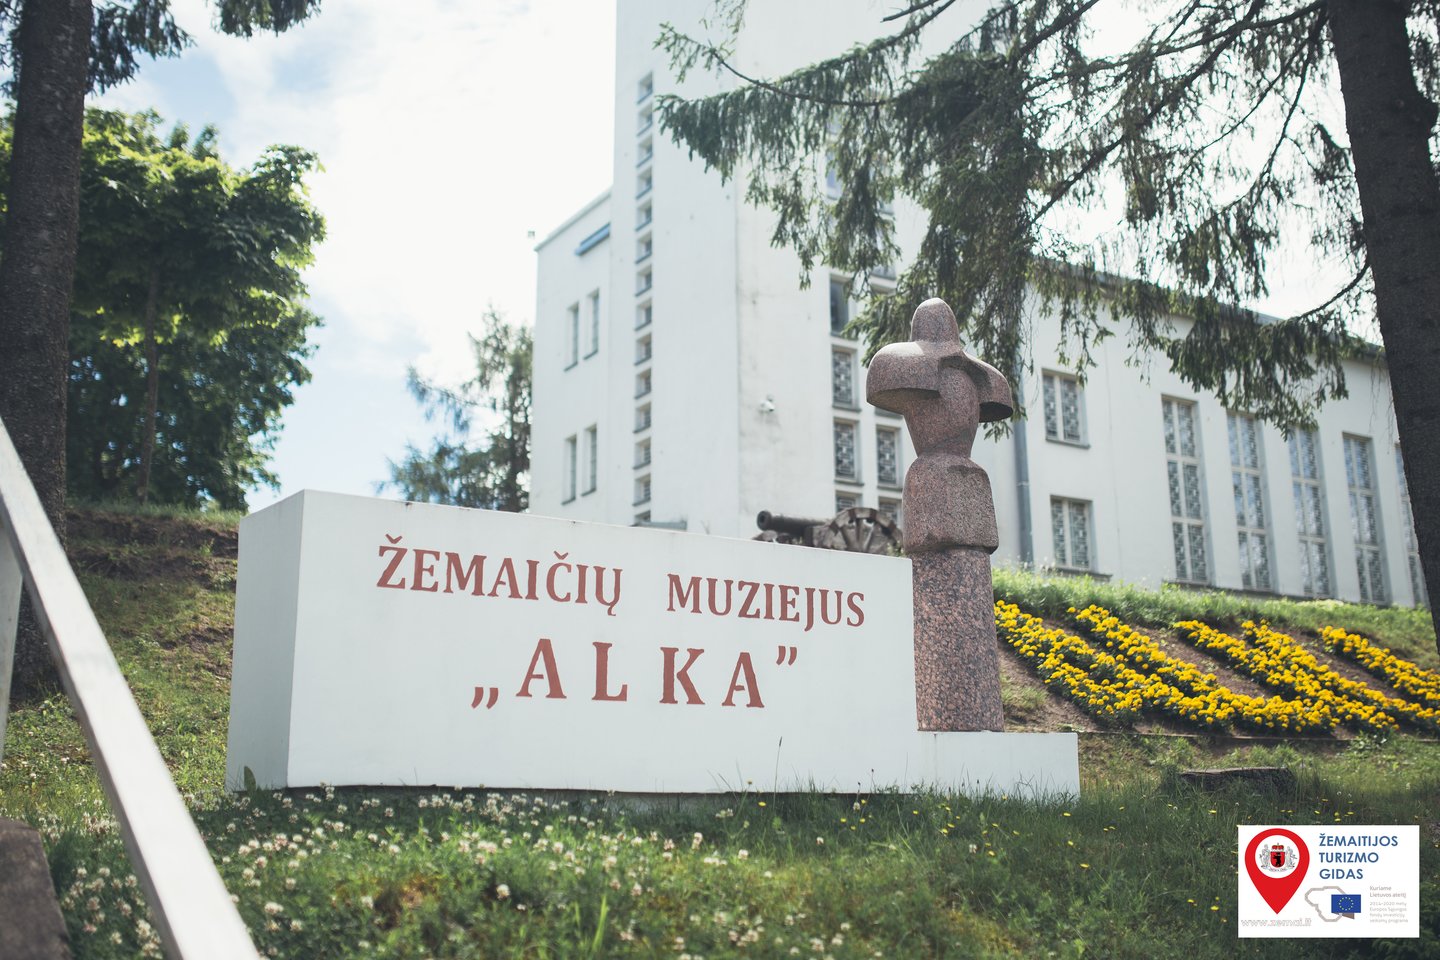  Muziejus „Alka“ – lankomiausias muziejus Žemaitijoje.<br> Žemaitijos turizmo centro nuotr.